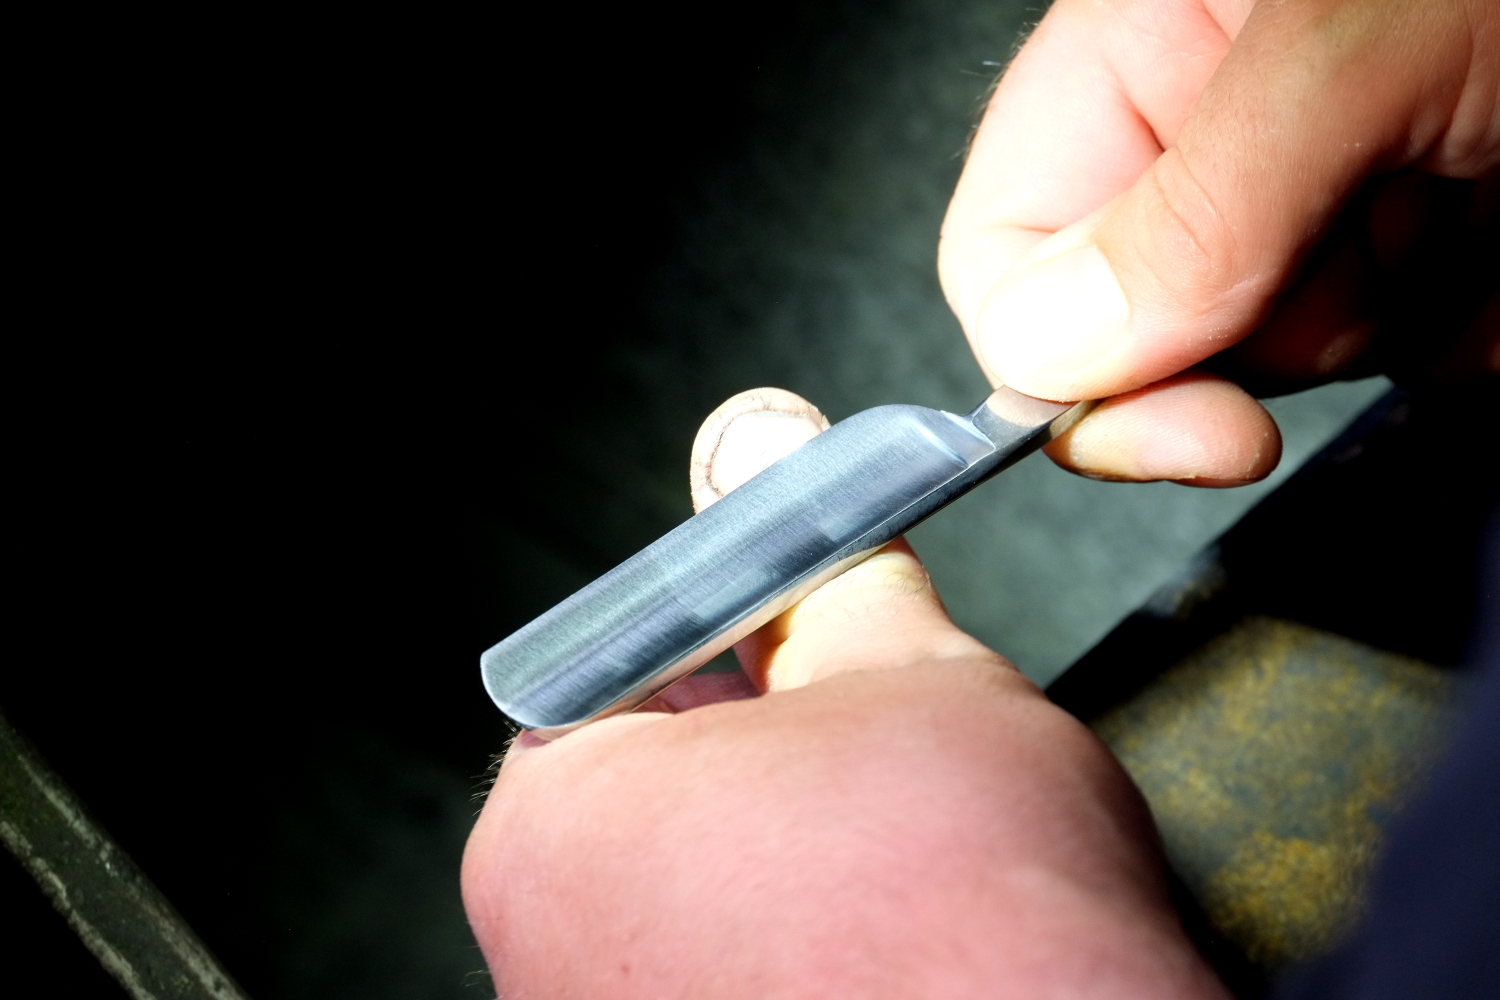 Manufakturen-Blog: Die Hohlklinge eines Rasiermessers muss hart und elastisch zugleich sein - Test am Daumenangel (Foto: Martin Specht)